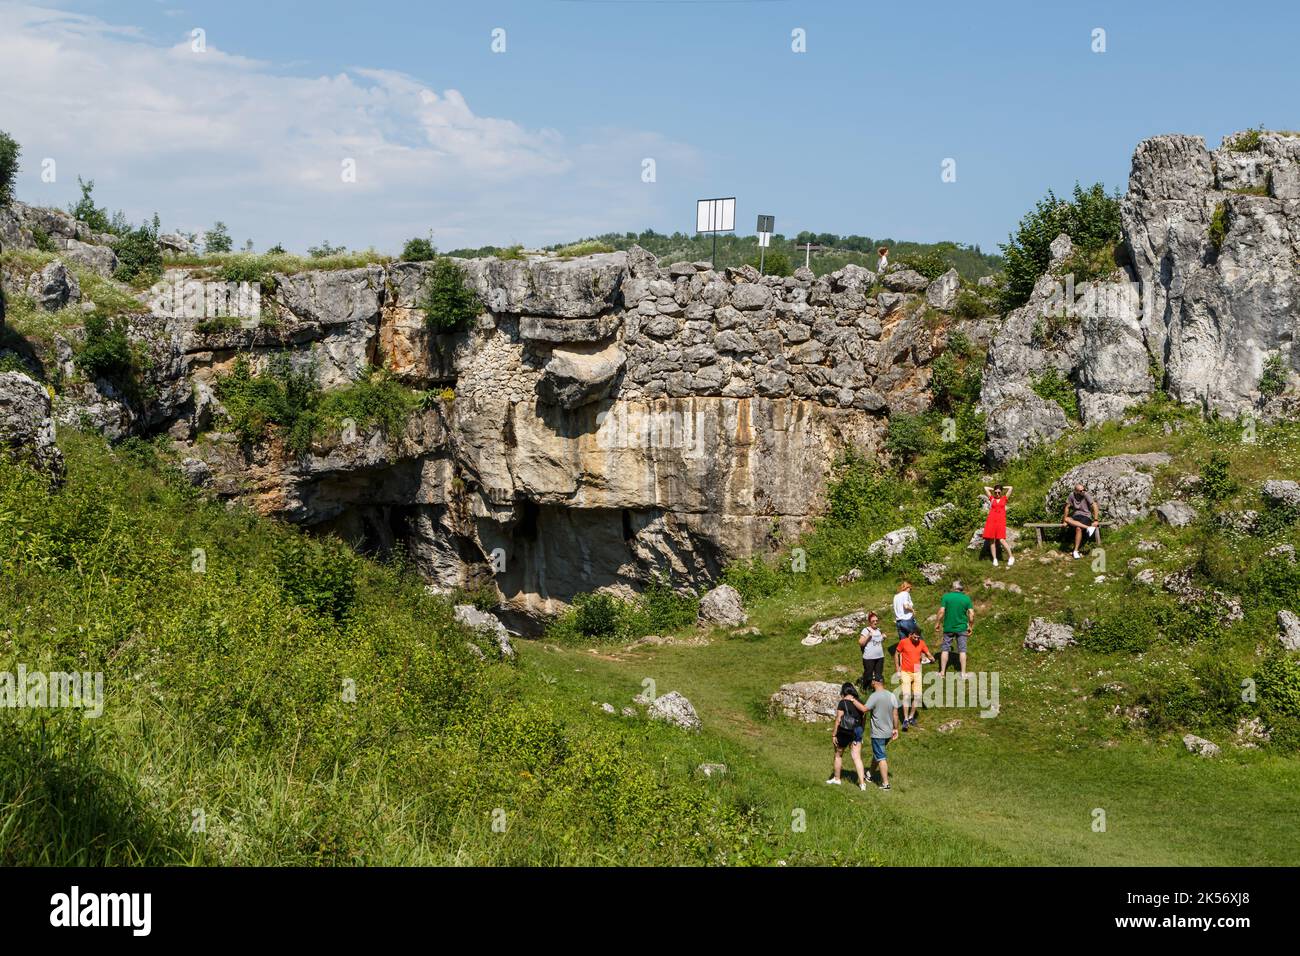 Puente de Dios ( Podul lui Dumnezeu ) - puente de roca natural formado por una cueva colapsada el 29 de junio de 2020 en Ponoarele, Mehedinti, Rumania Foto de stock